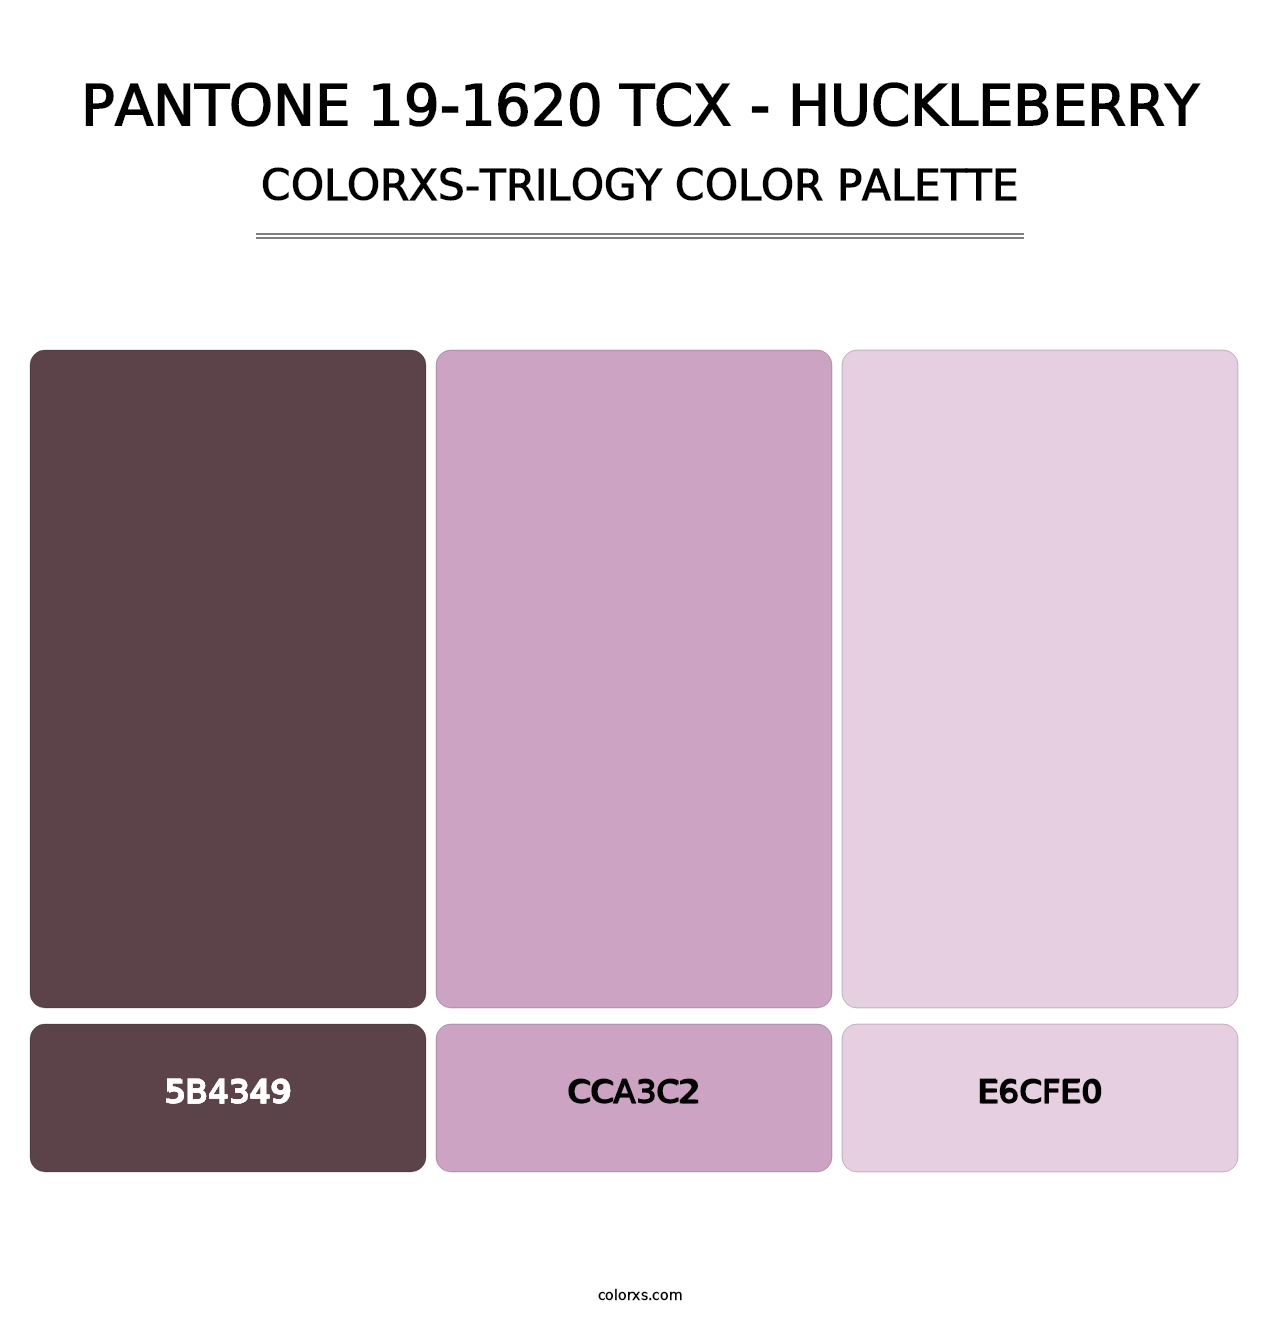 PANTONE 19-1620 TCX - Huckleberry - Colorxs Trilogy Palette